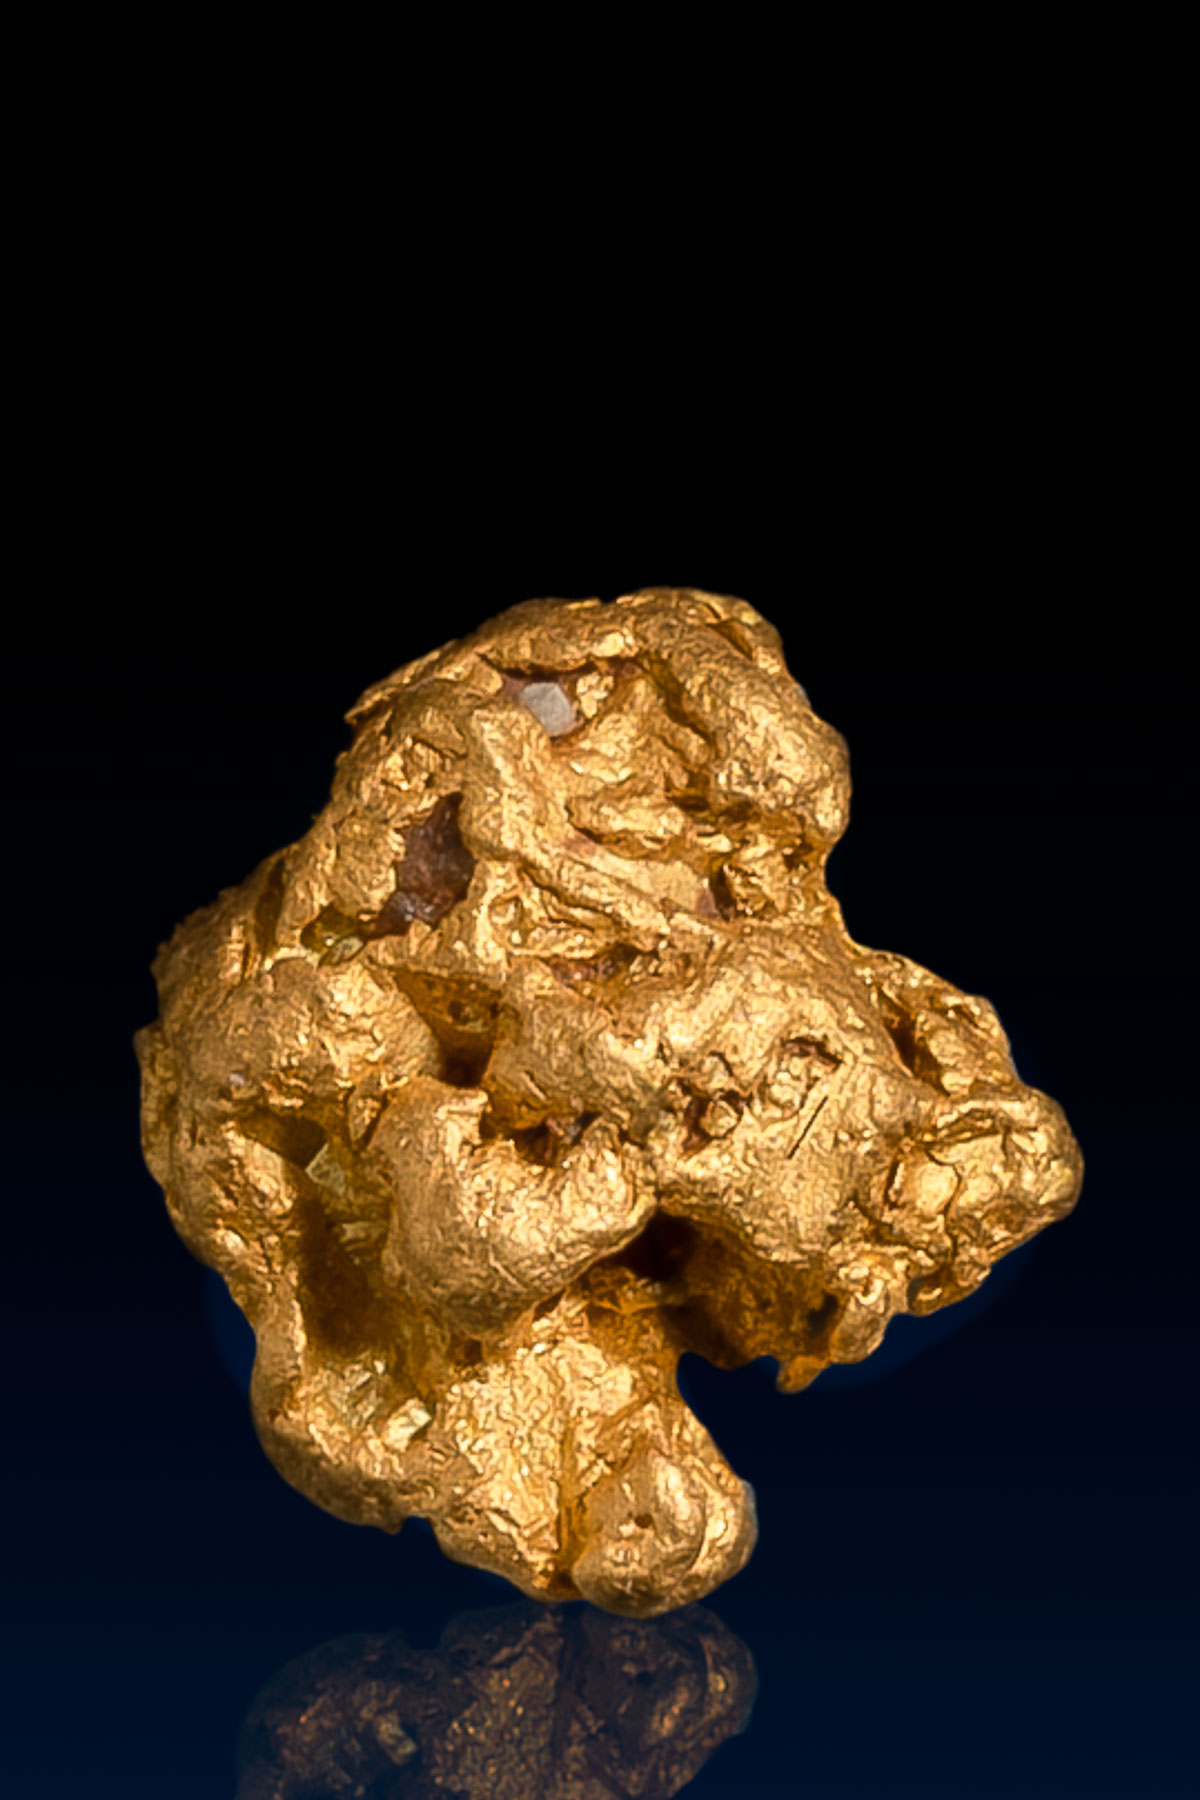 Round Rugged Arizona Natural Gold Nugget - 1.3 grams